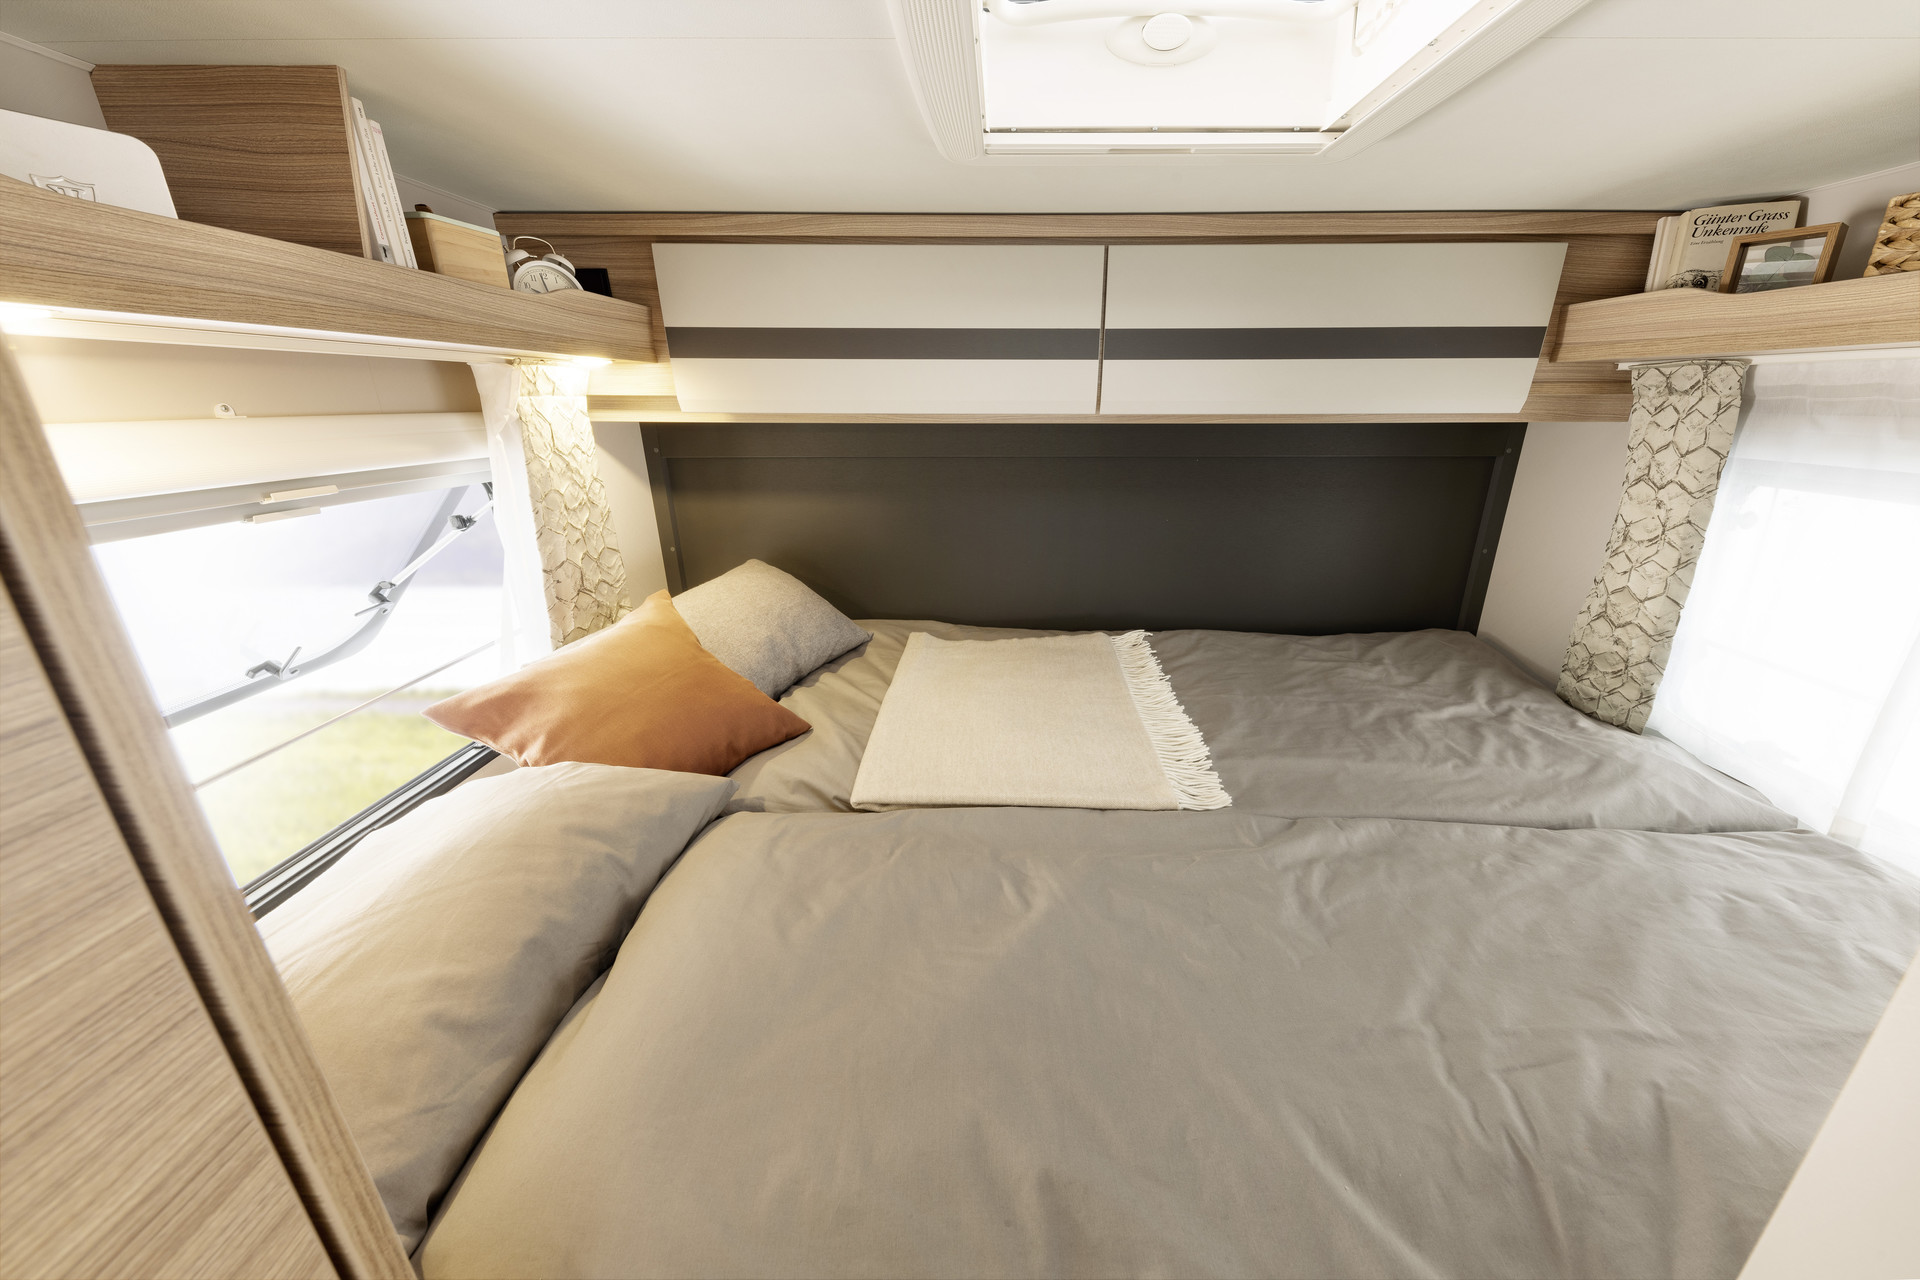 La cama doble transversal tiene una superficie de 200 × 145 cm. Al igual que las camas gemelas, ofrece un confort perfecto para dormir gracias al colchón de 7 zonas y 150 mm de grosor fabricado con material termorregulador •I 1